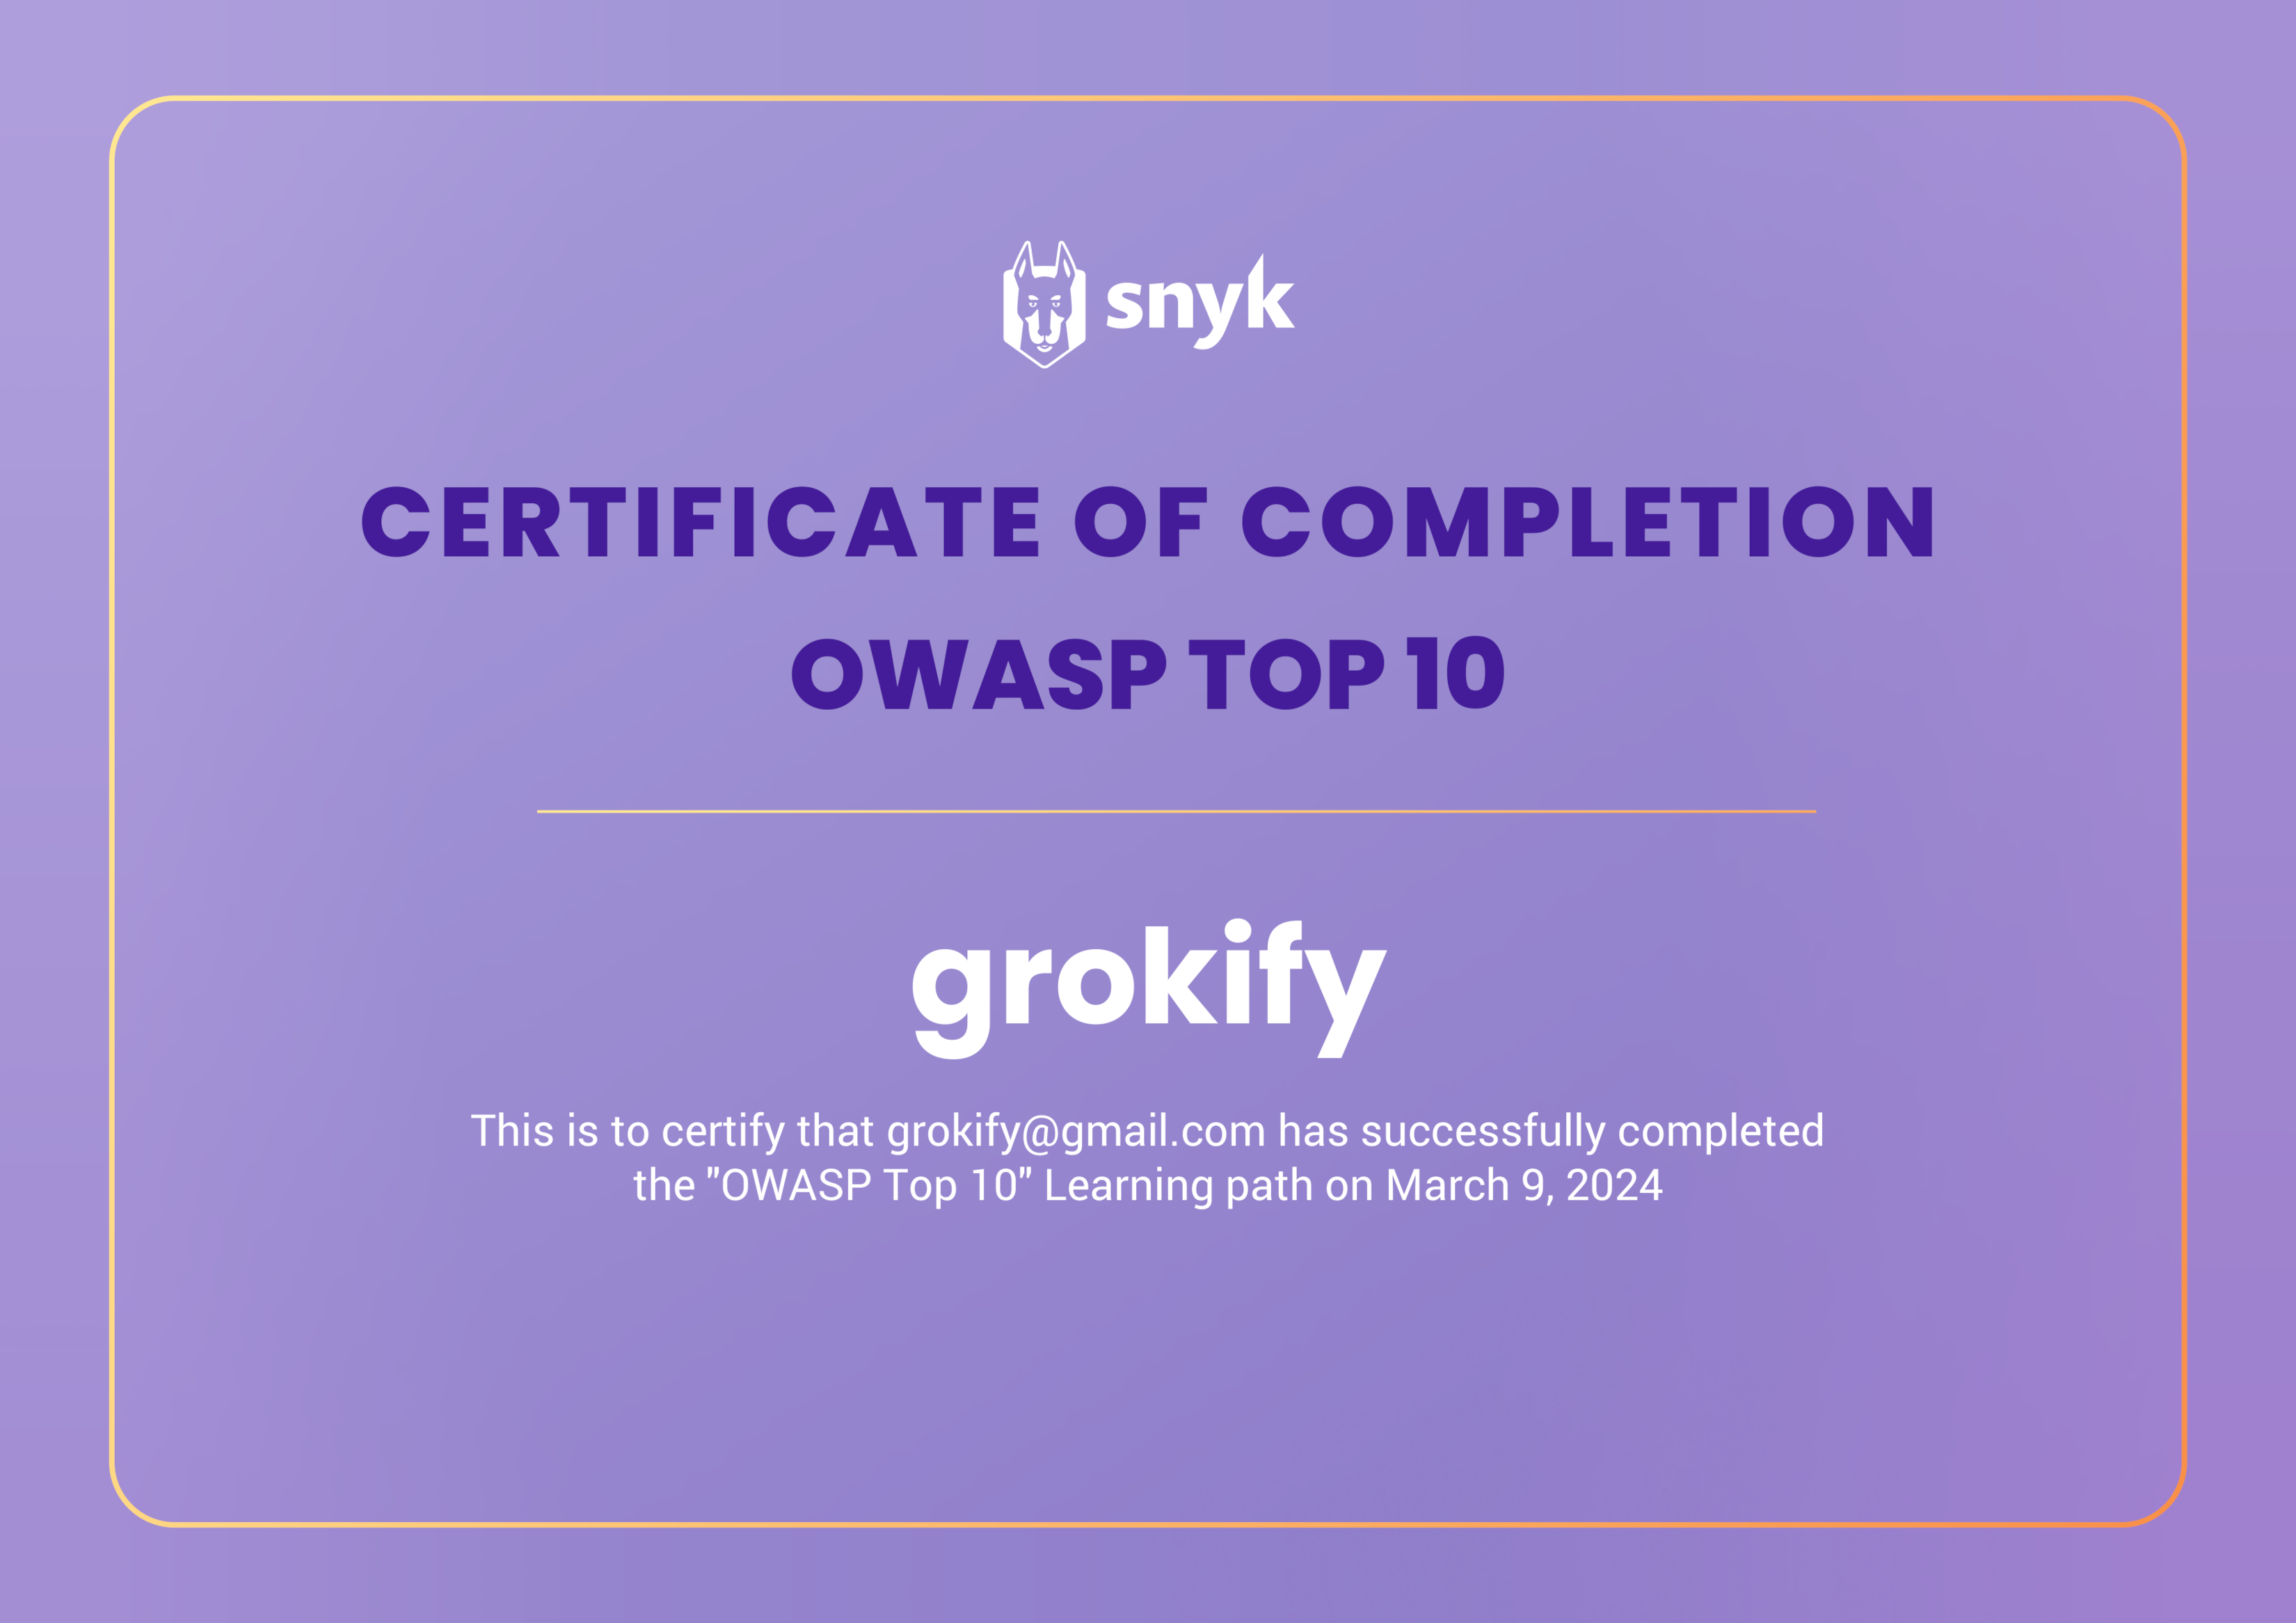 John's OWASP Top 10 from Snyk